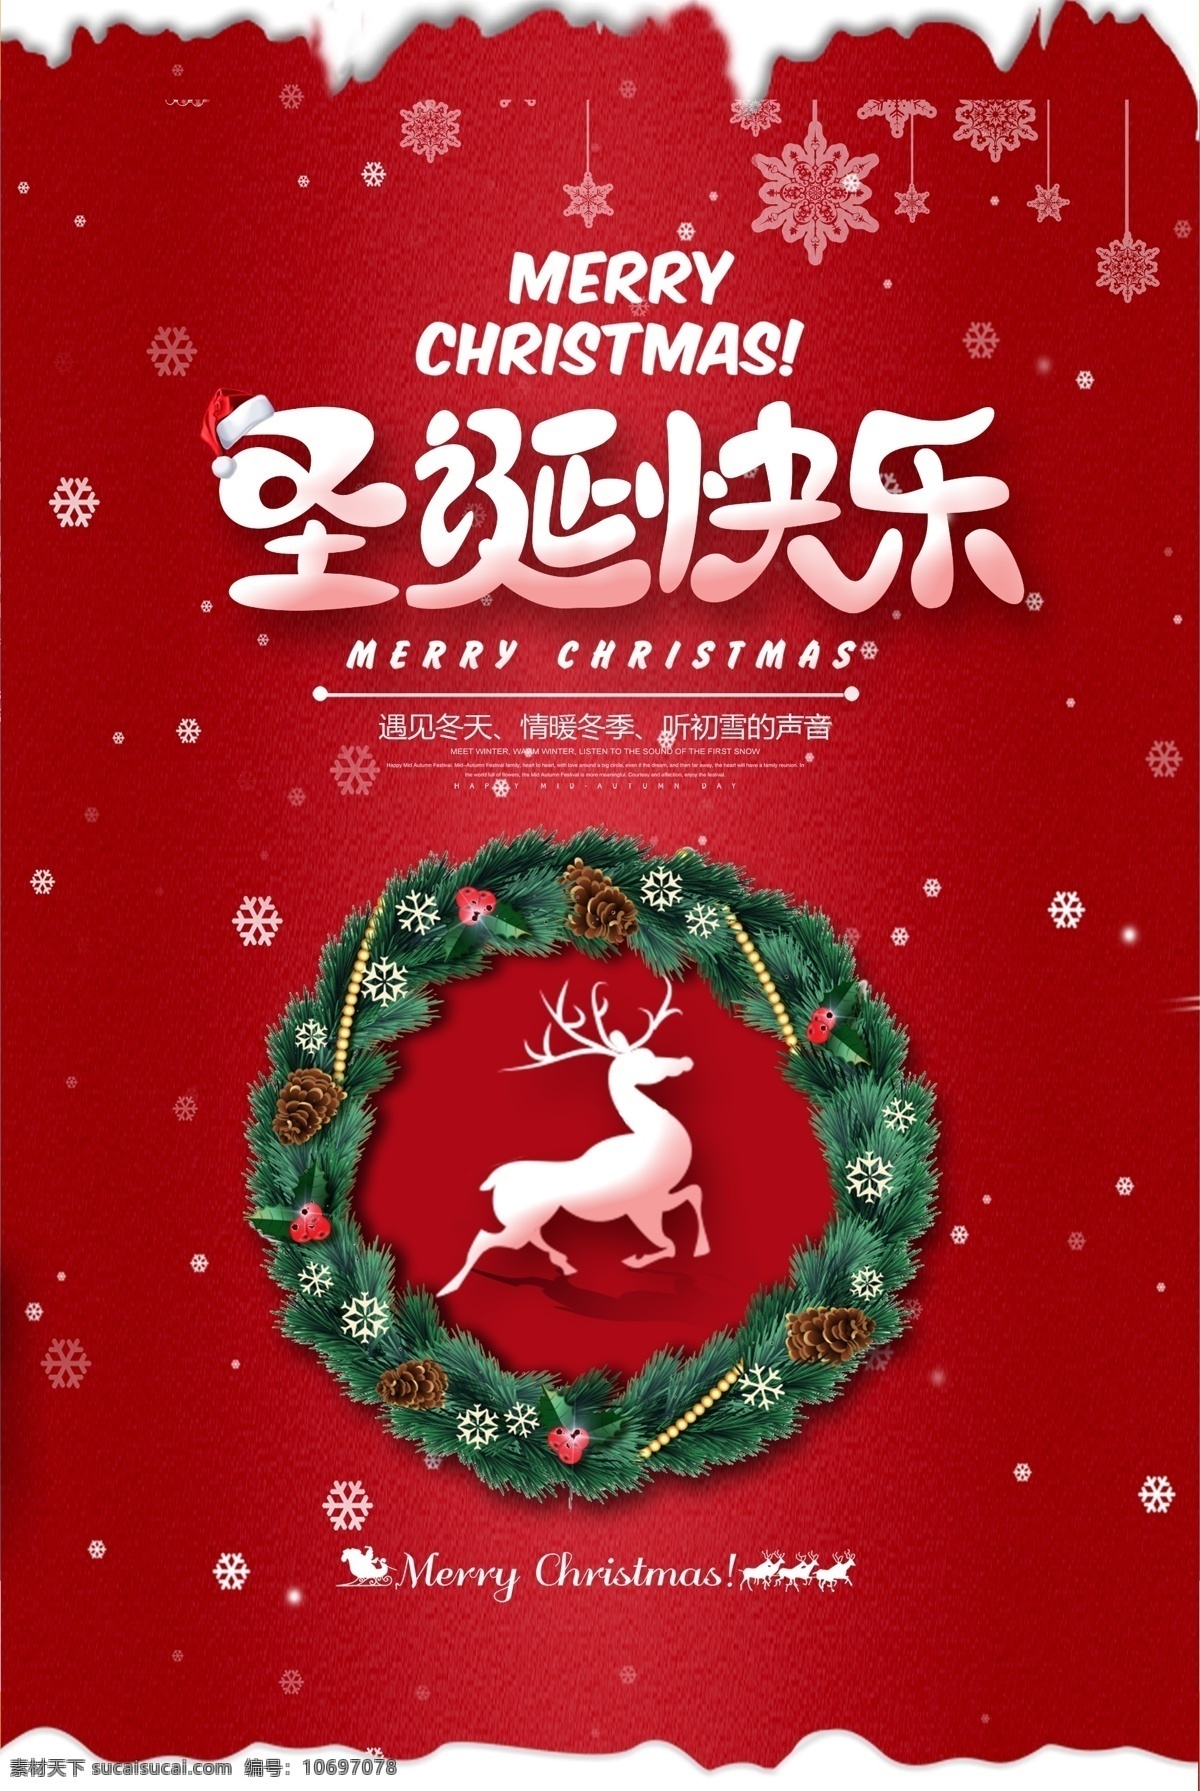 简约 圣诞节 平安夜 促销 海报 节日海报 房屋 礼物 派礼 圣诞 丝带横幅 麋鹿 满减活动 平安 诞节